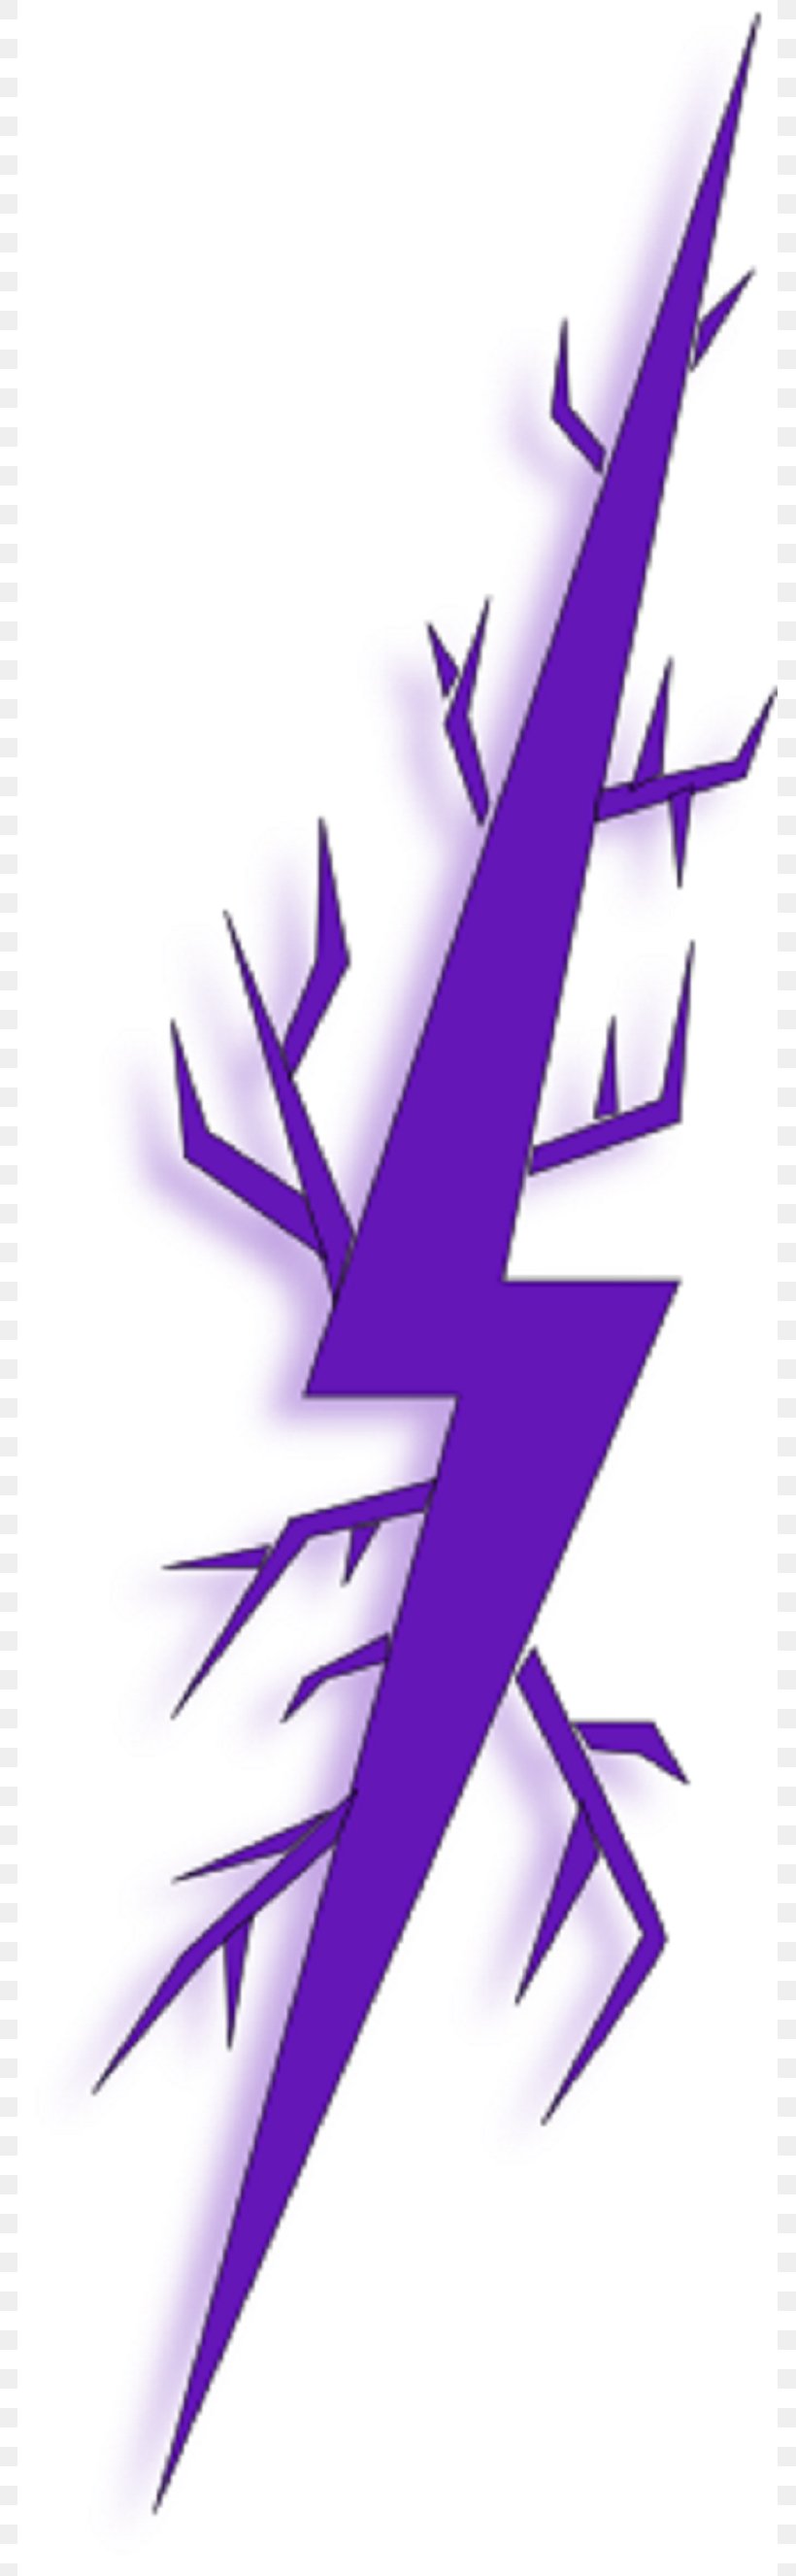 Electric Spark Clip Art, PNG, 783x2653px, Electric Spark, Art, Cdr, Leaf, Lightning Download Free